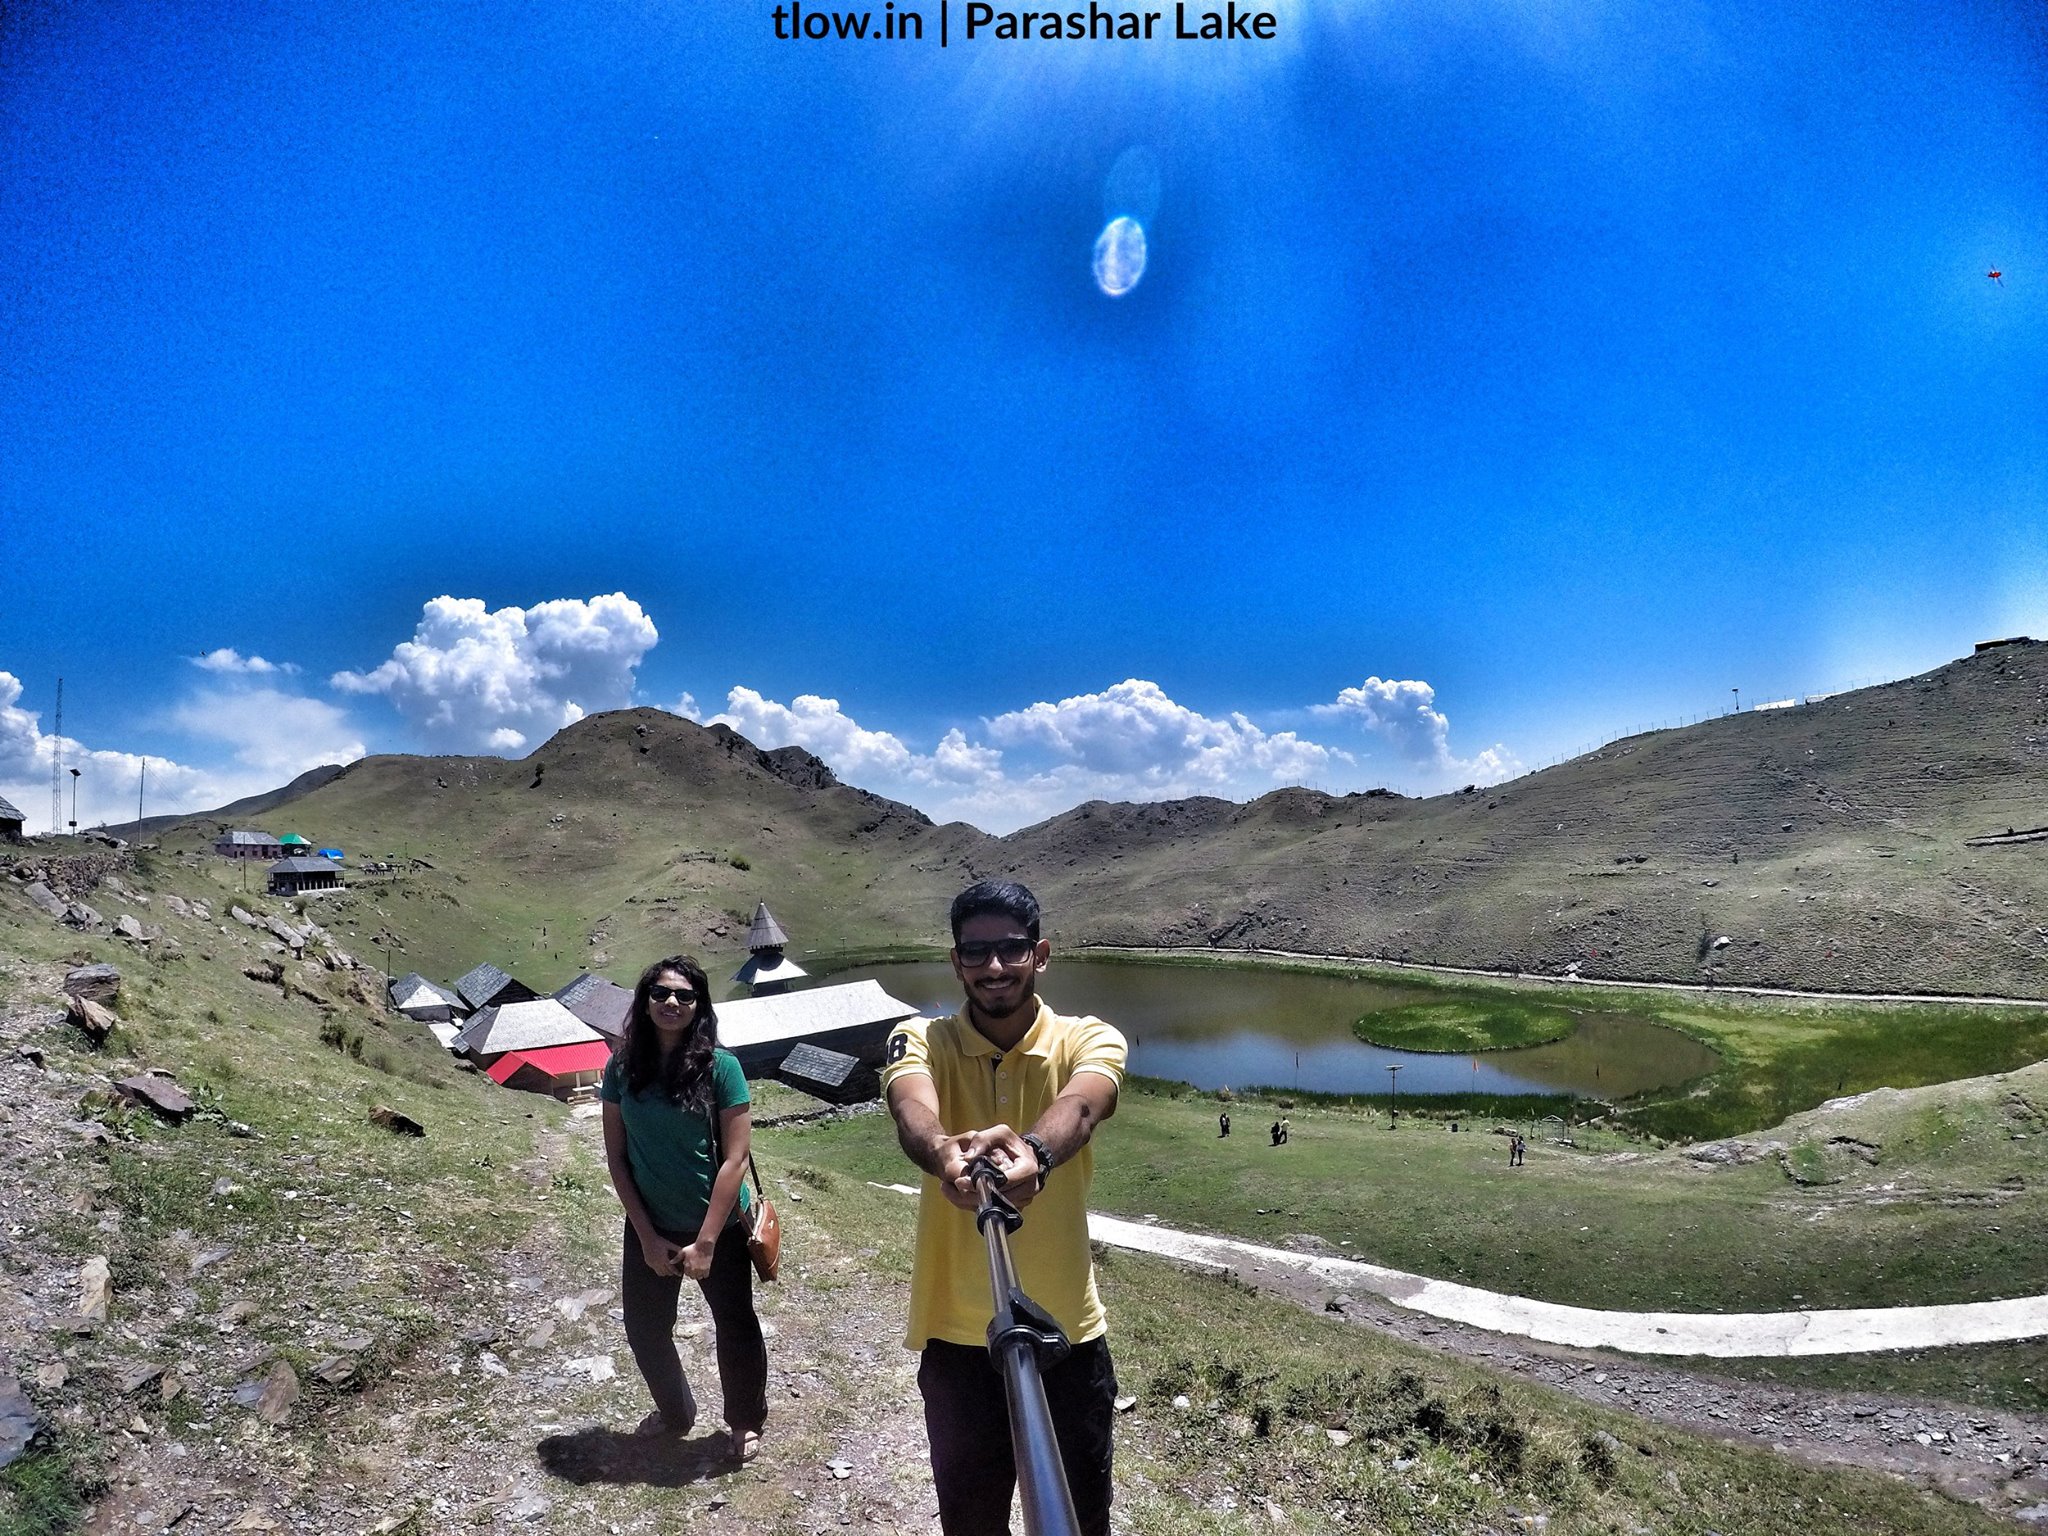 Parashar lake